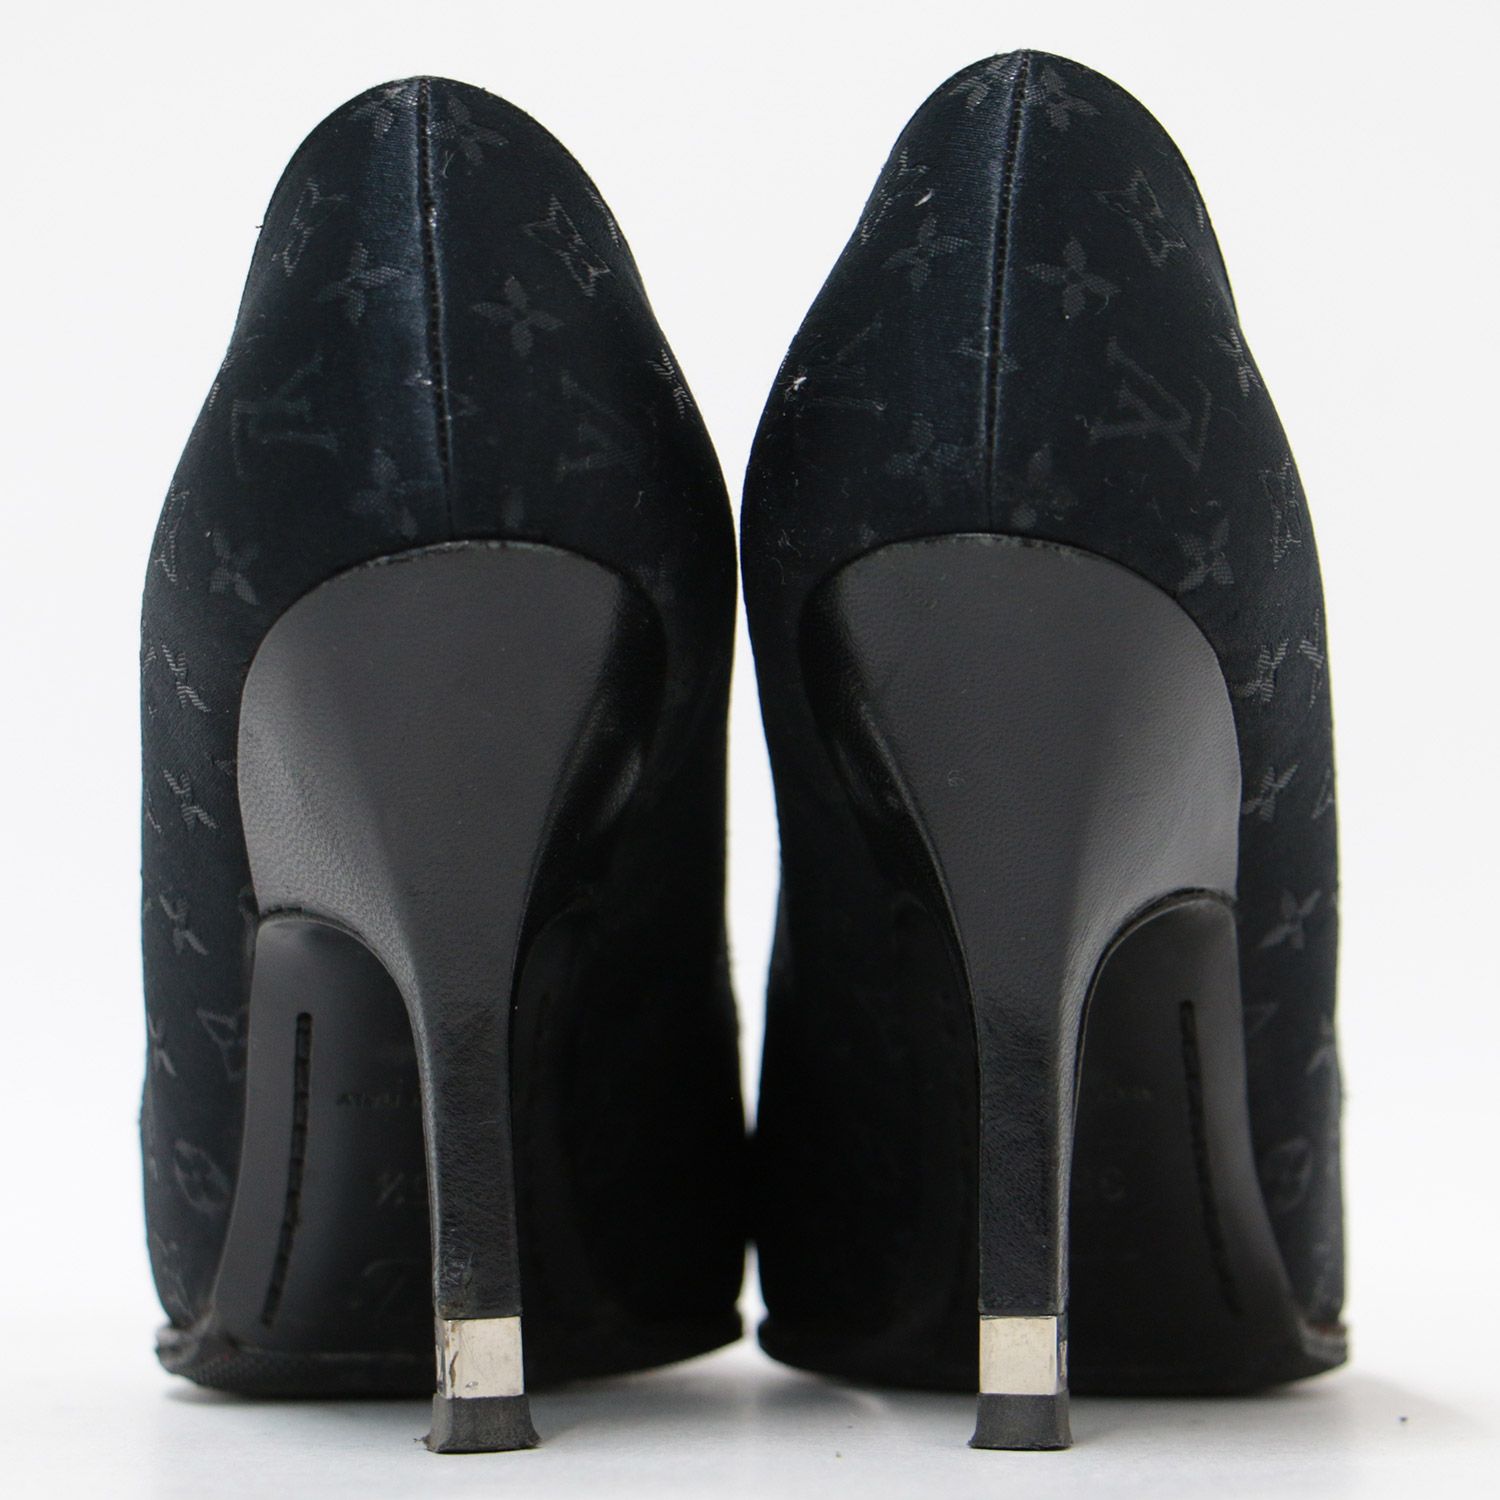 LOUIS VUITTON ルイヴィトン パンプス ハイヒール シューズ 靴 ブラック 黒 35.5 22.5cm モノグラム 高級 ベーシック  きれいめ 上品 総柄